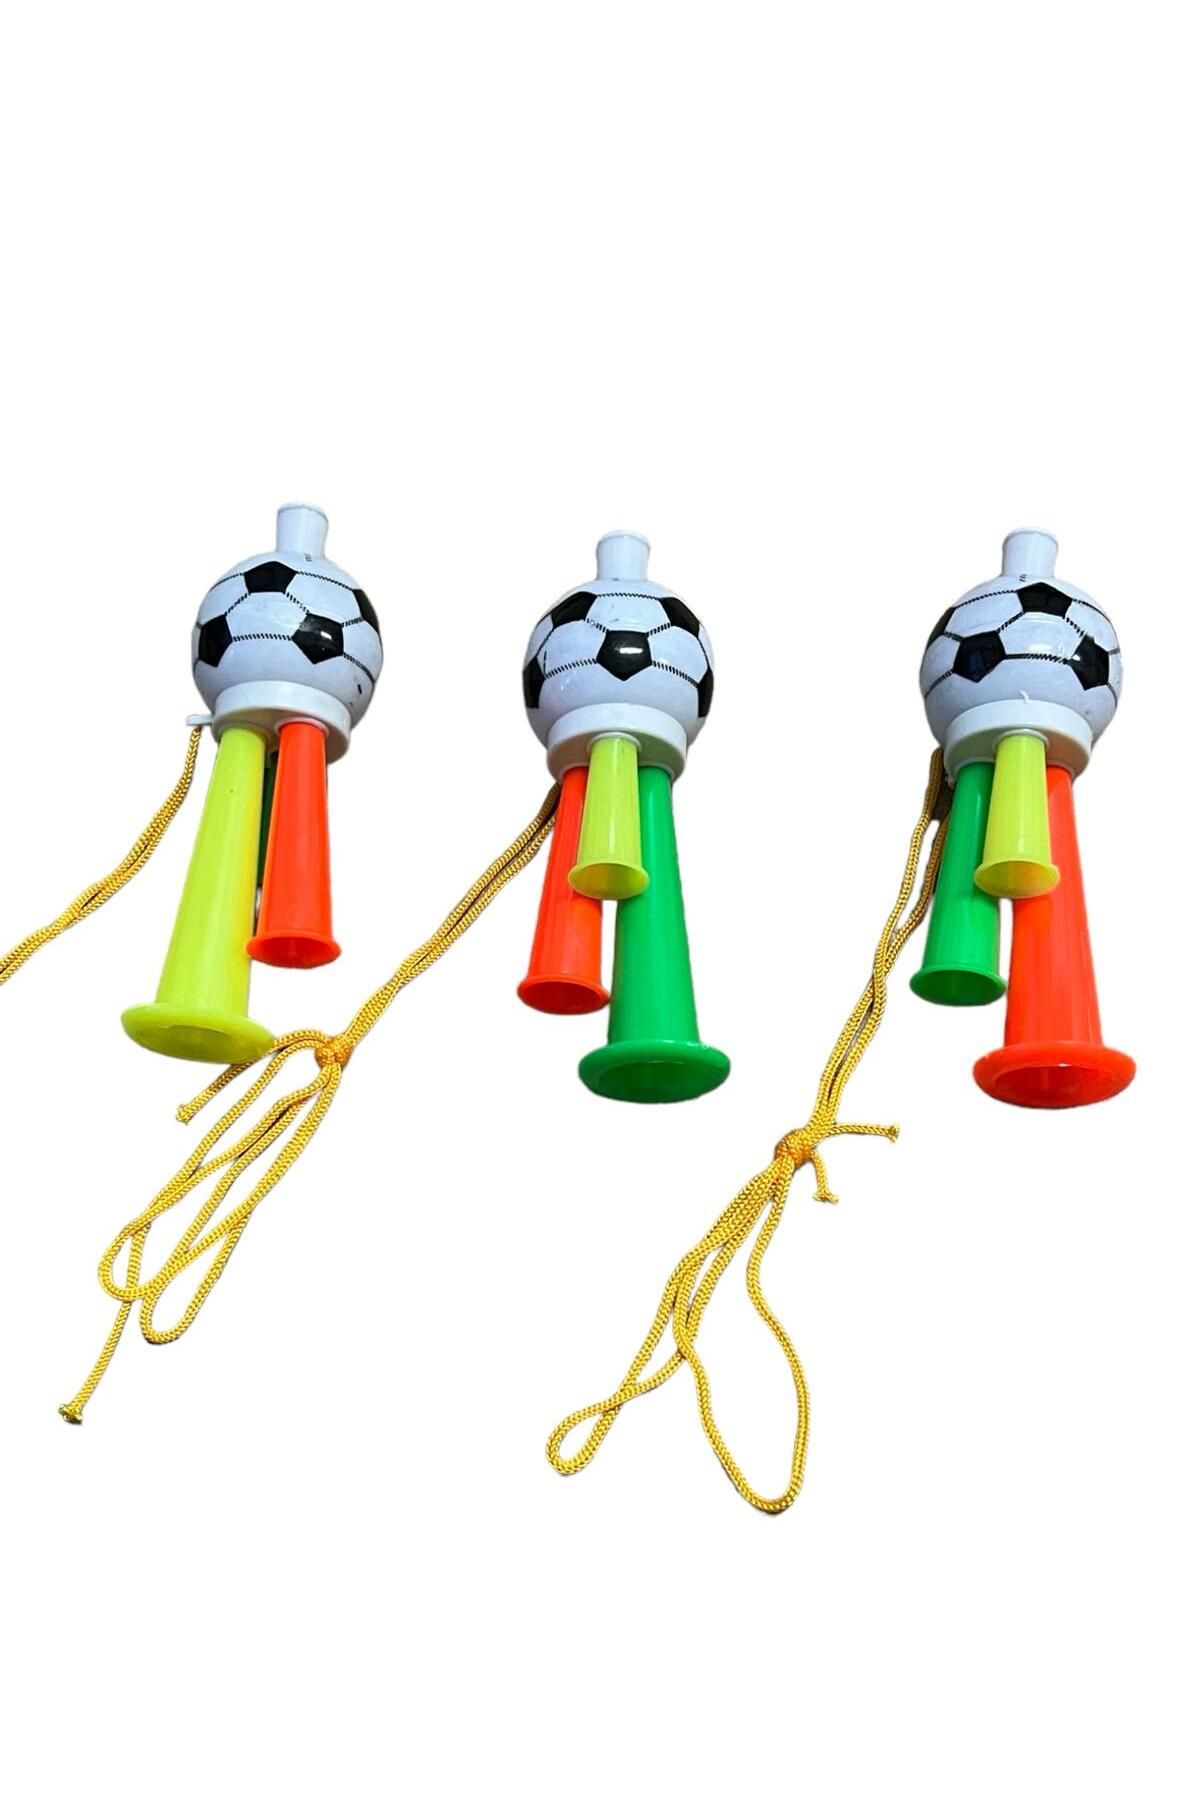 SIFIR312 3 Adet Maç Kornası -  Sesli Üflemeli İpli Mini Maç Kornası - Maç Borazanı - Vuvuzela - Tribün Düdüğü